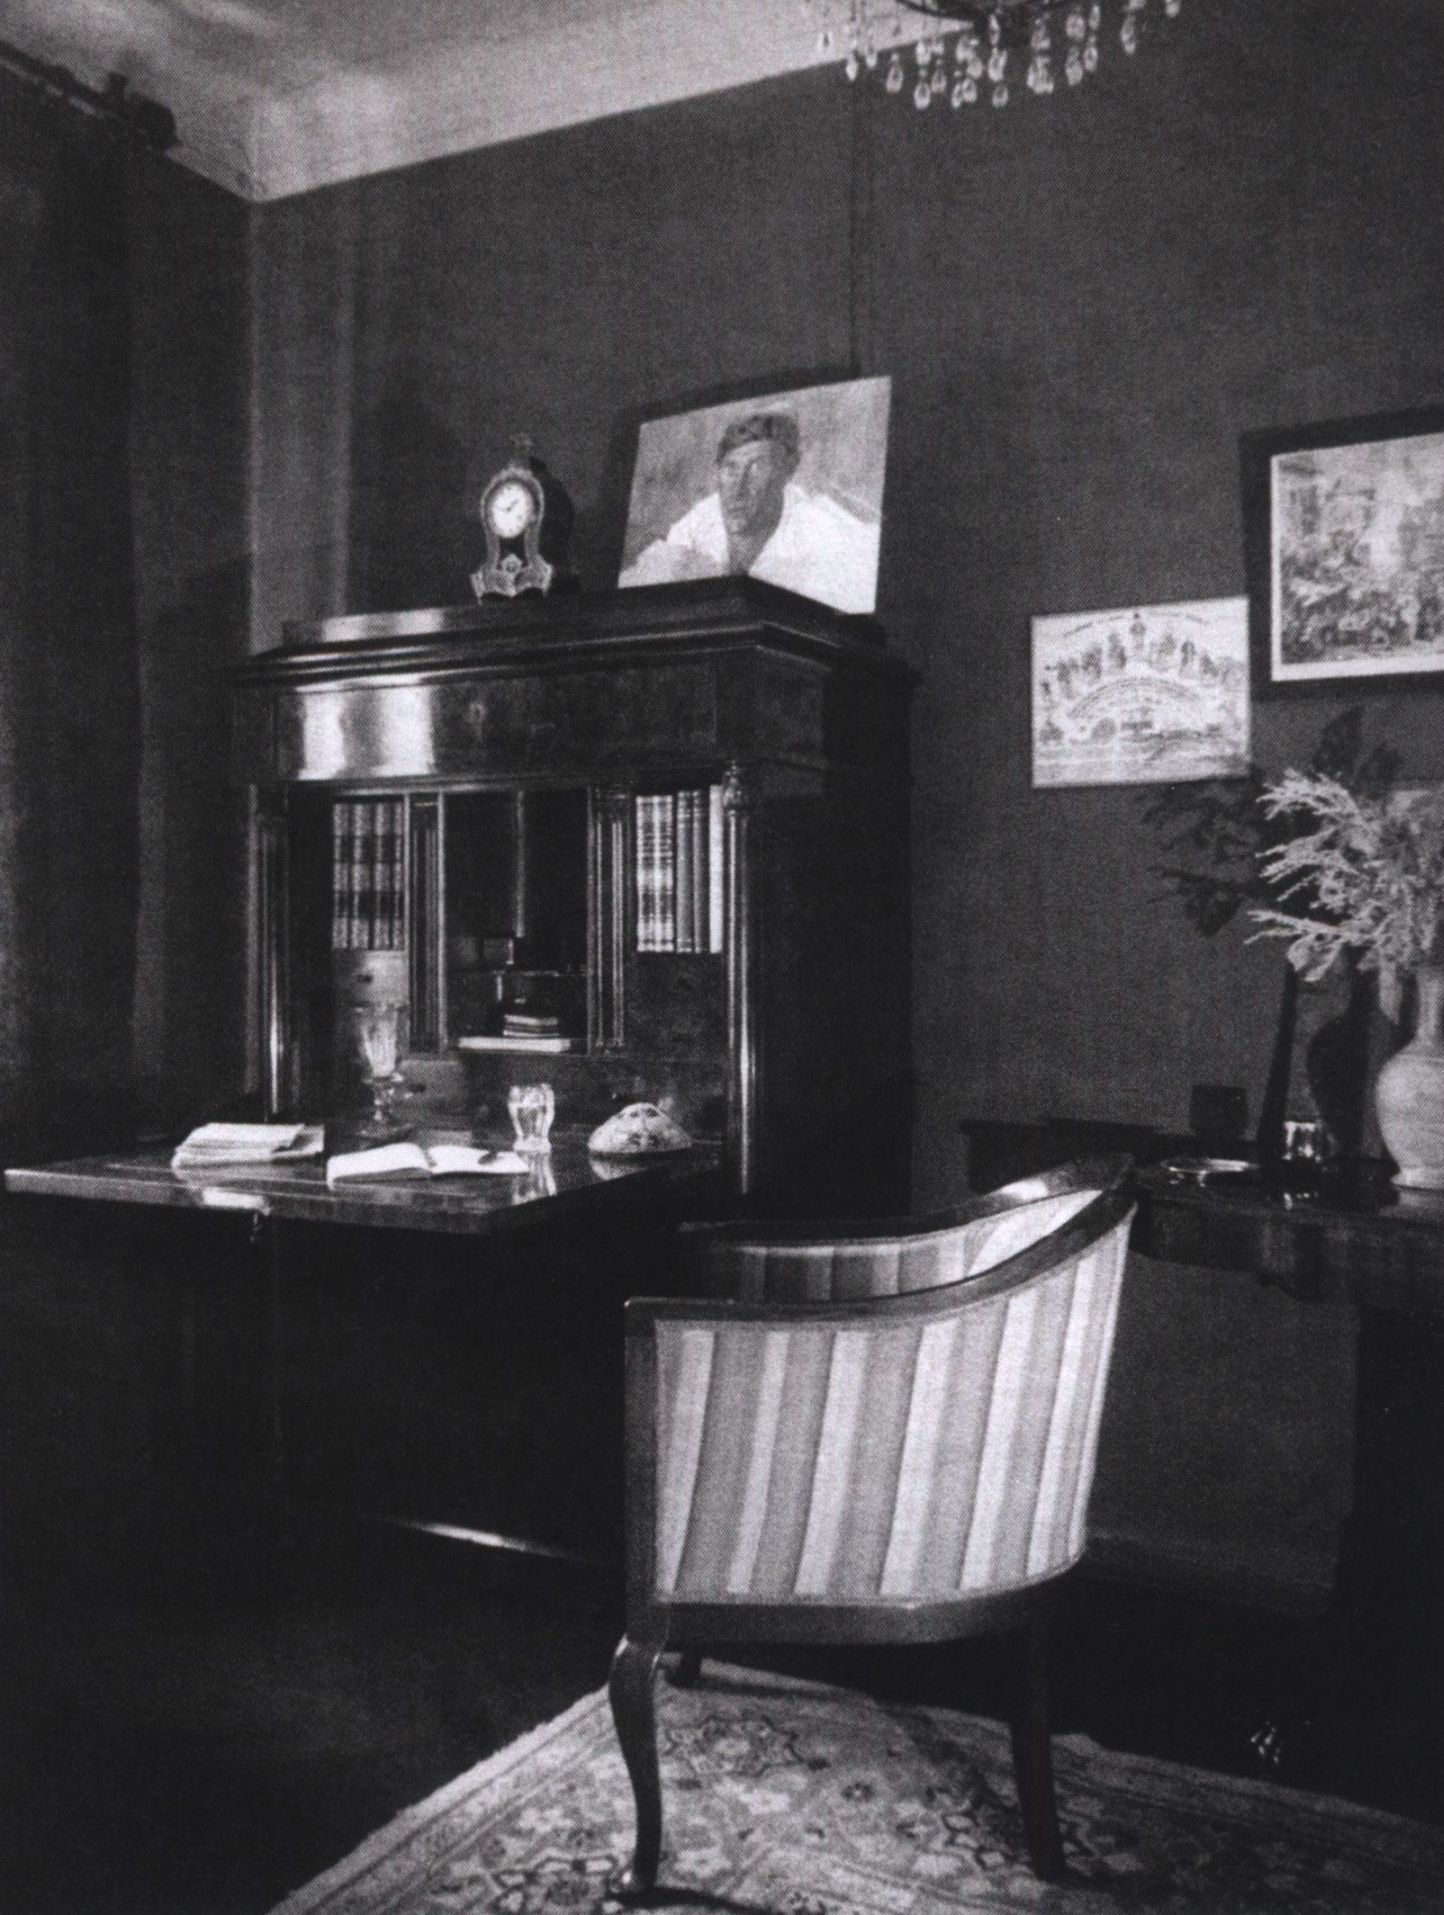 Комната Михаила Булгакова в квартире на улице Фурманова (в Нащокинском переулке), 1940 г.